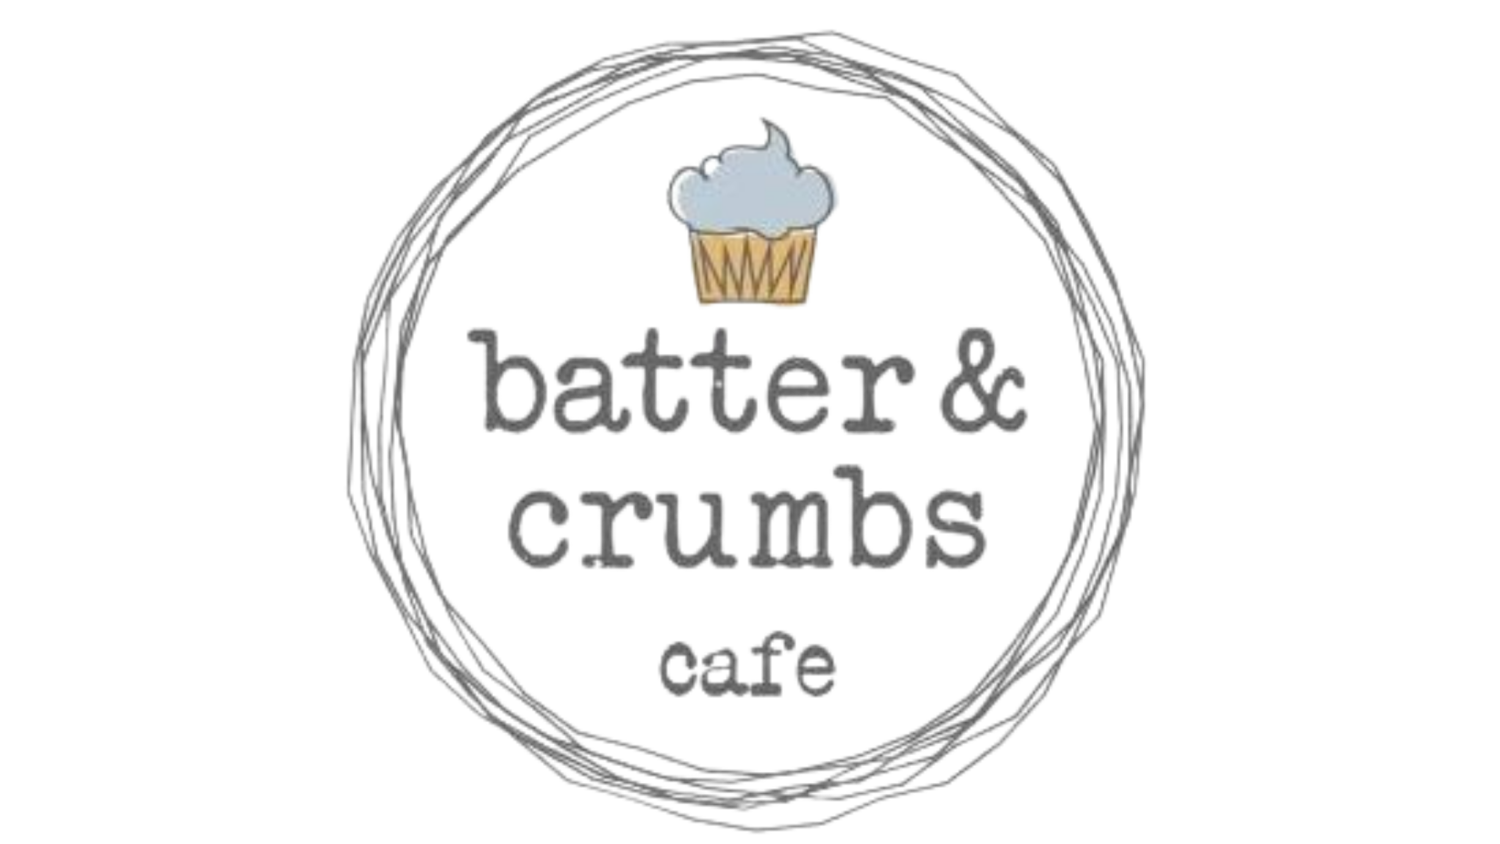 Batter & Crumbs | Vegan Bakery Philadelphia